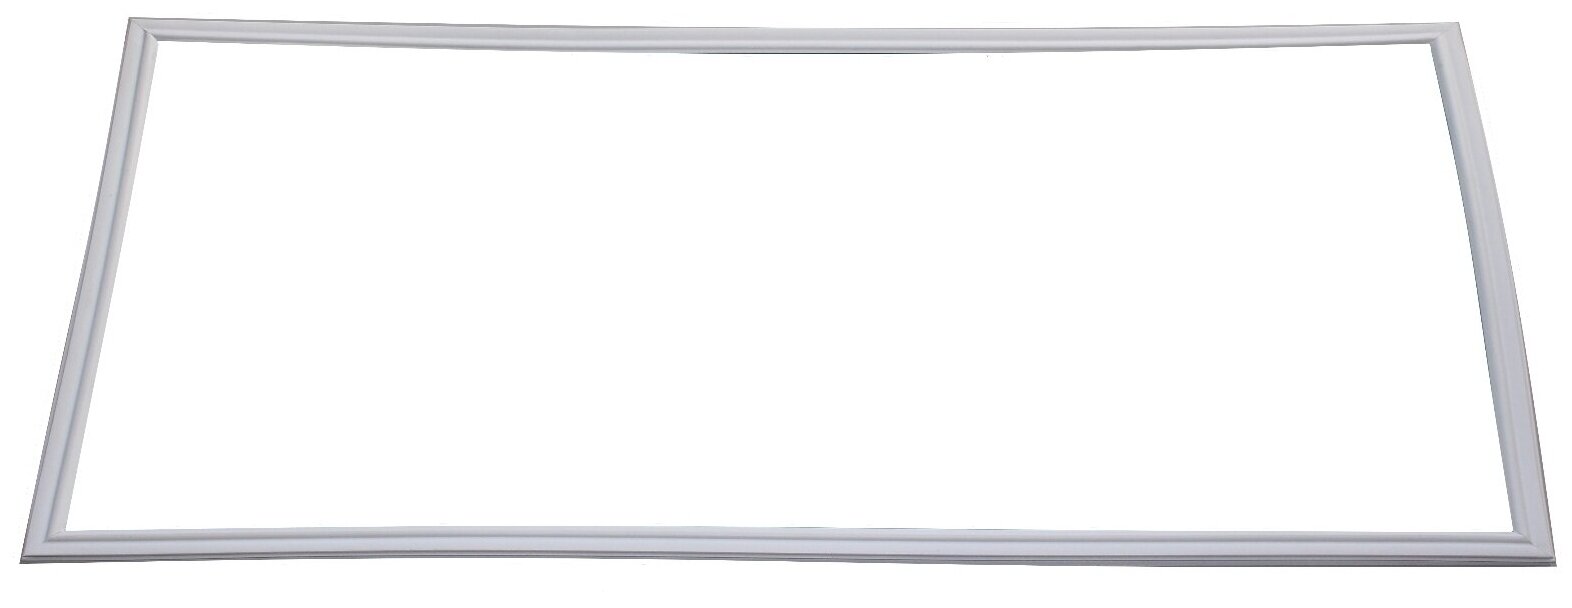 Уплотнитель для двери морозильной камеры холодильника Днепр ДХ-243, (41 x 55 см)